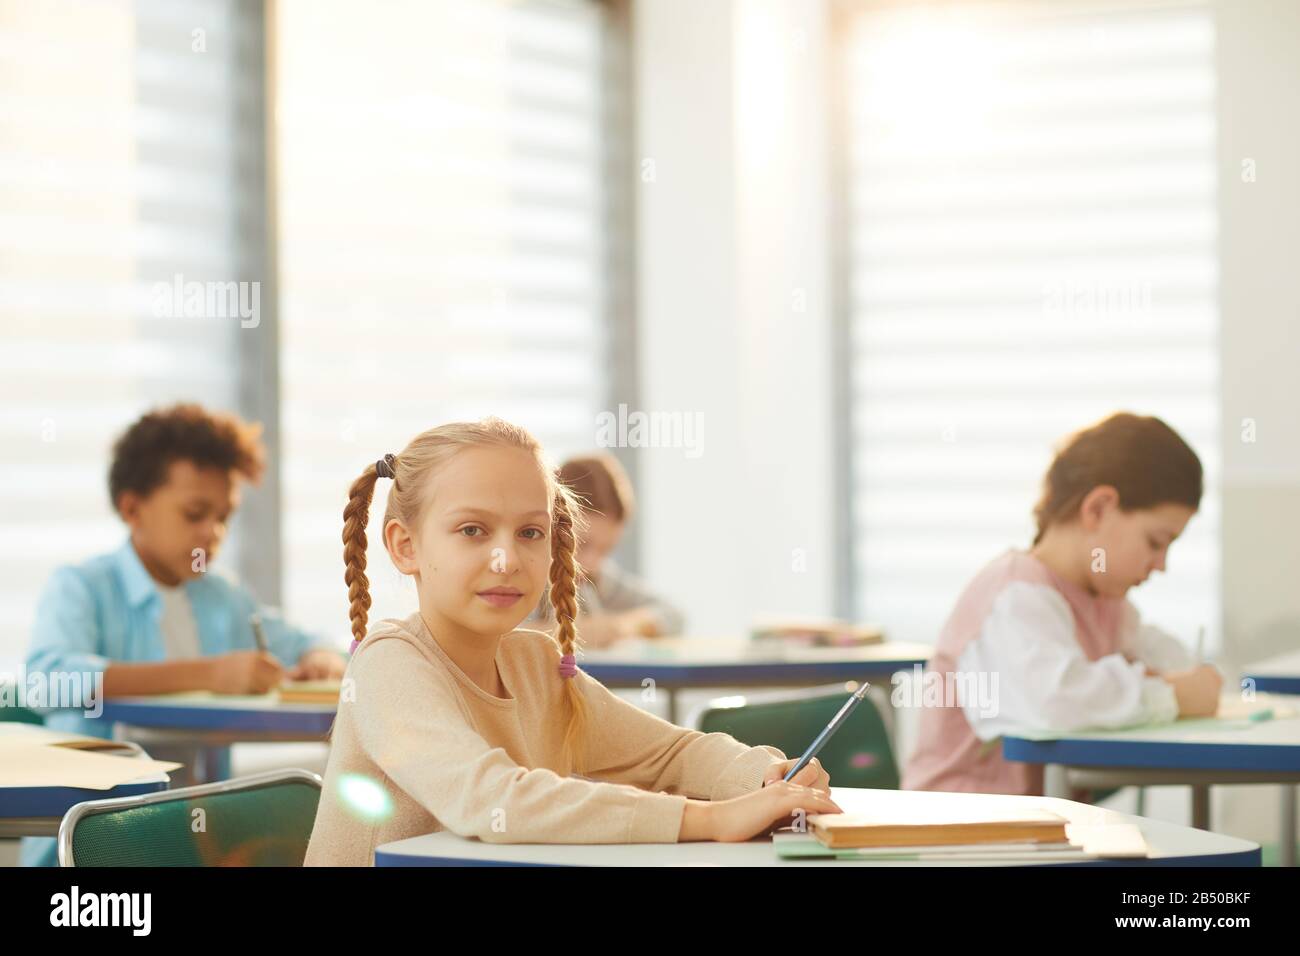 Portrait horizontal de la petite fille caucasienne avec des cheveux blonds assis à la table de l'école tenant crayon regardant l'appareil photo, espace de copie Banque D'Images